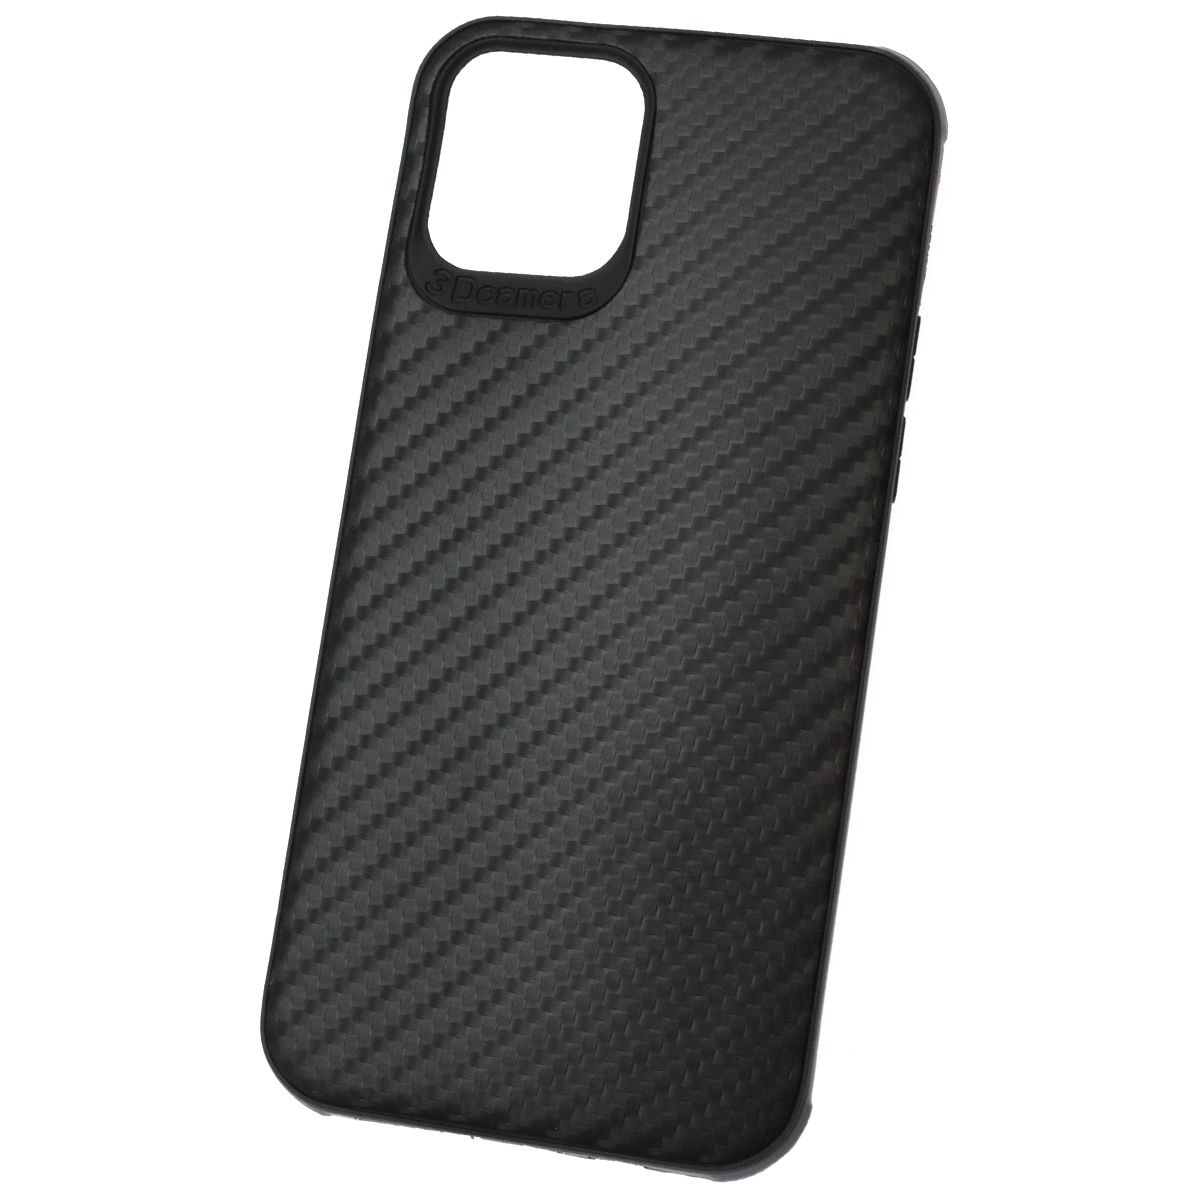 Чехол накладка для APPLE iPhone 12 (6.1"), iPhone 12 Pro (6.1"), силикон, карбон, цвет черный